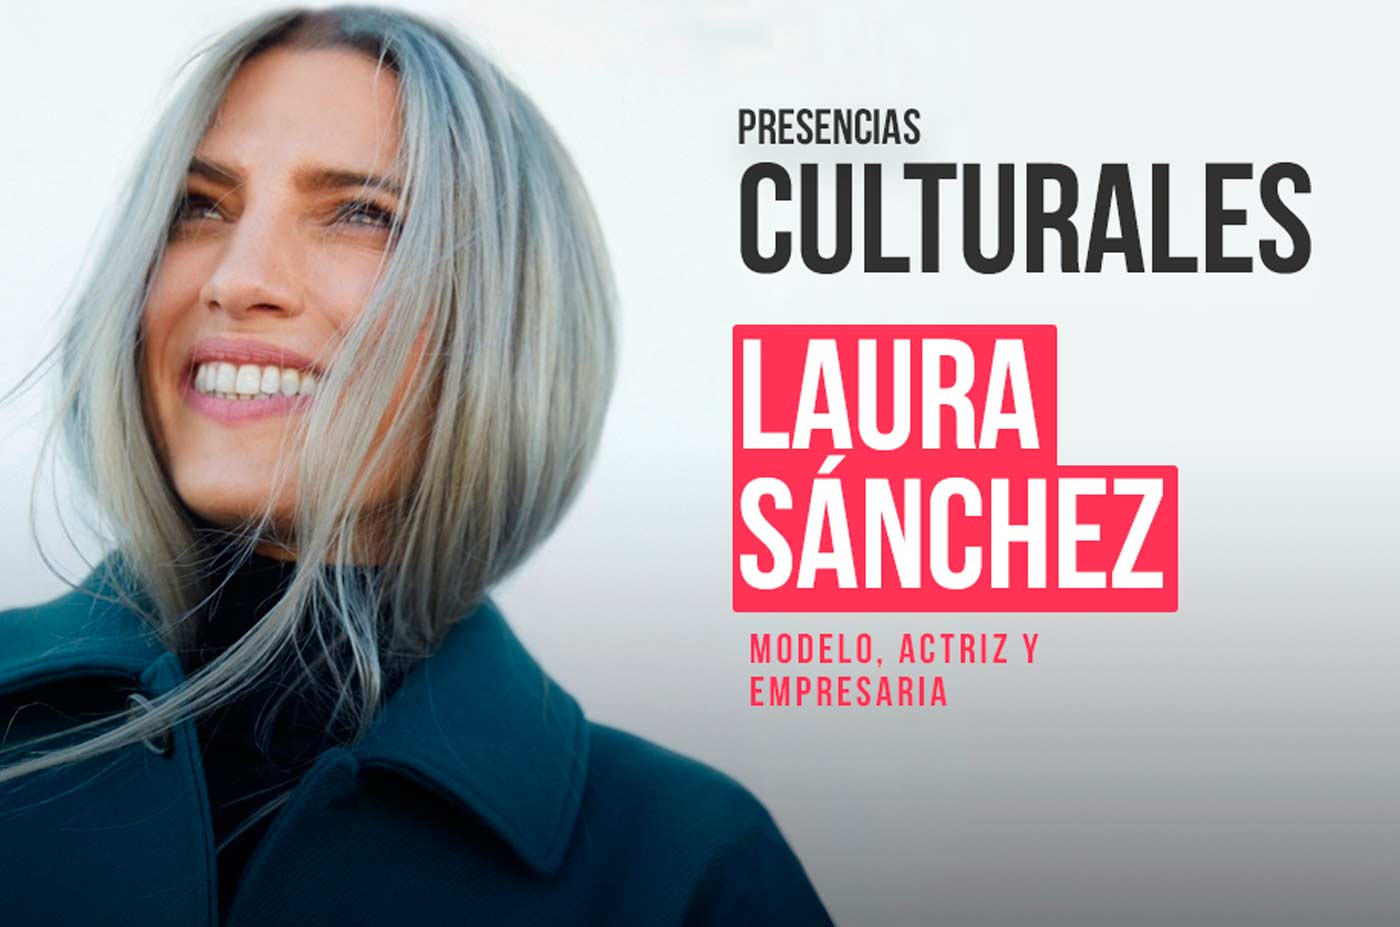 Laura Sanchez modelo actriz y empresaria presencias culturales en la Universidad de Huelva 3 de noviembre